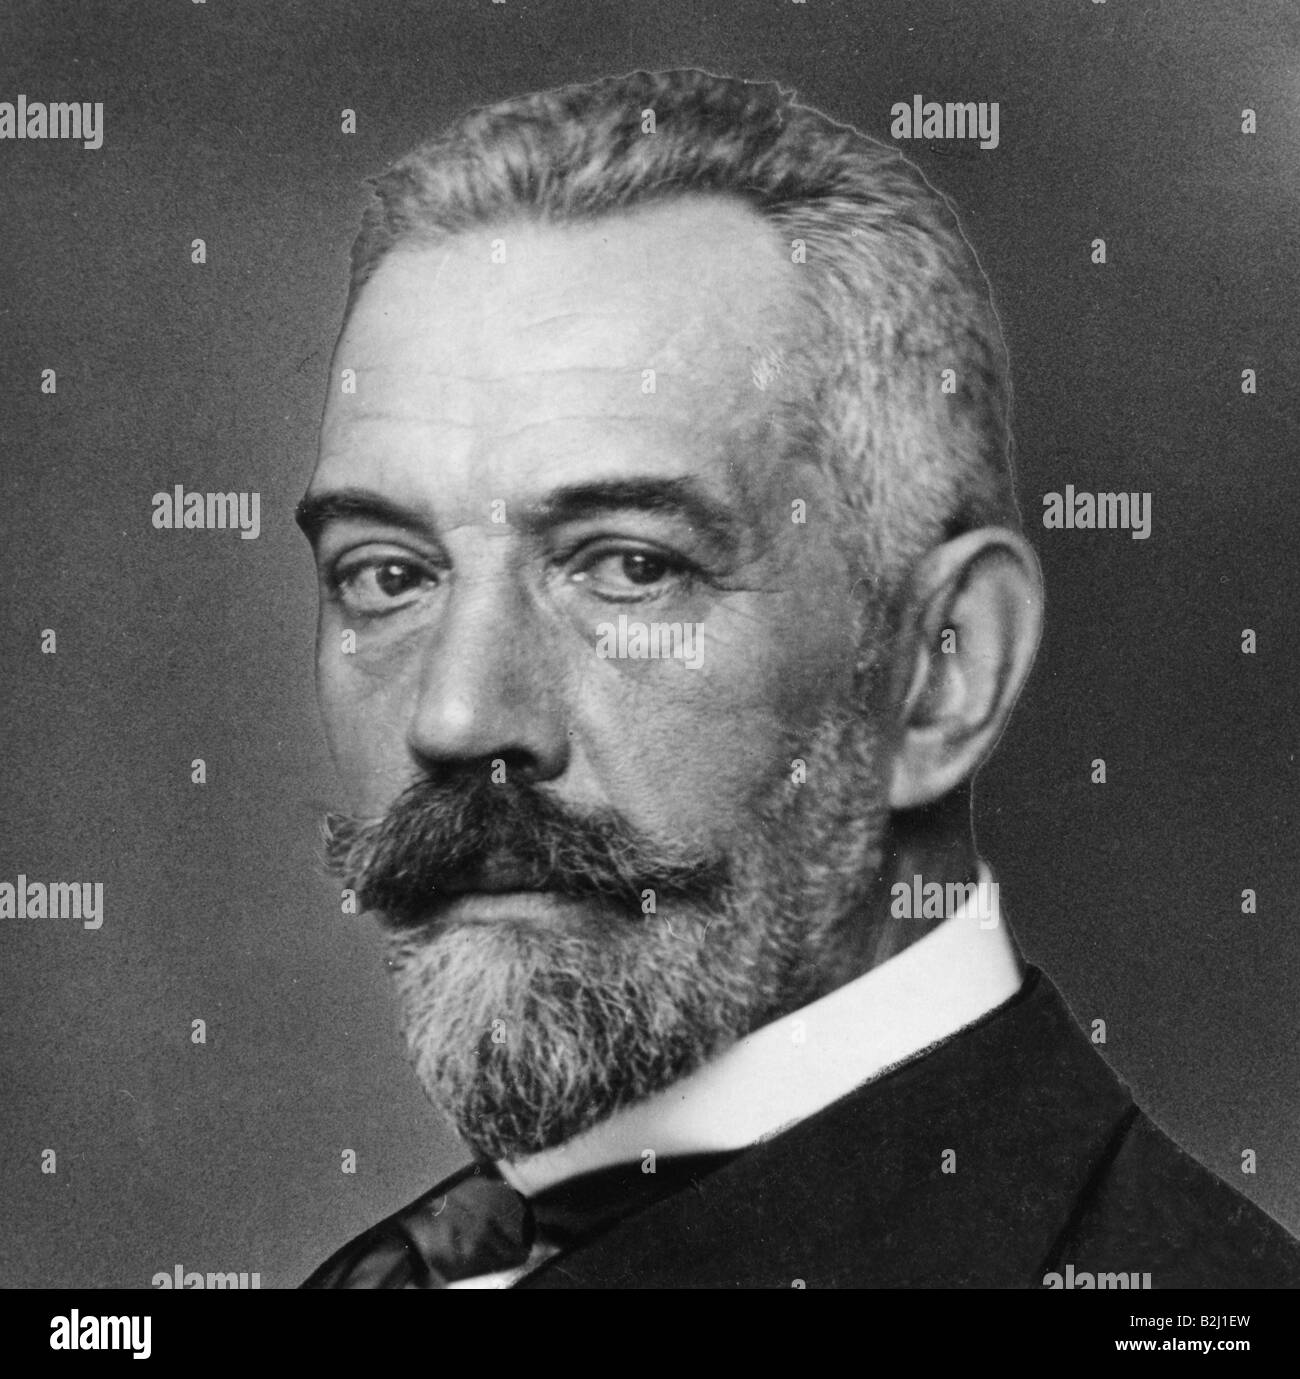 Bethmann-Hollweg, Theobald von, 22.11.1856 - 2.1.1921, deutscher Politiker, Bundeskanzler 14.7.1909 - 13.7.1917, Porträt, ca. 1910, Stockfoto